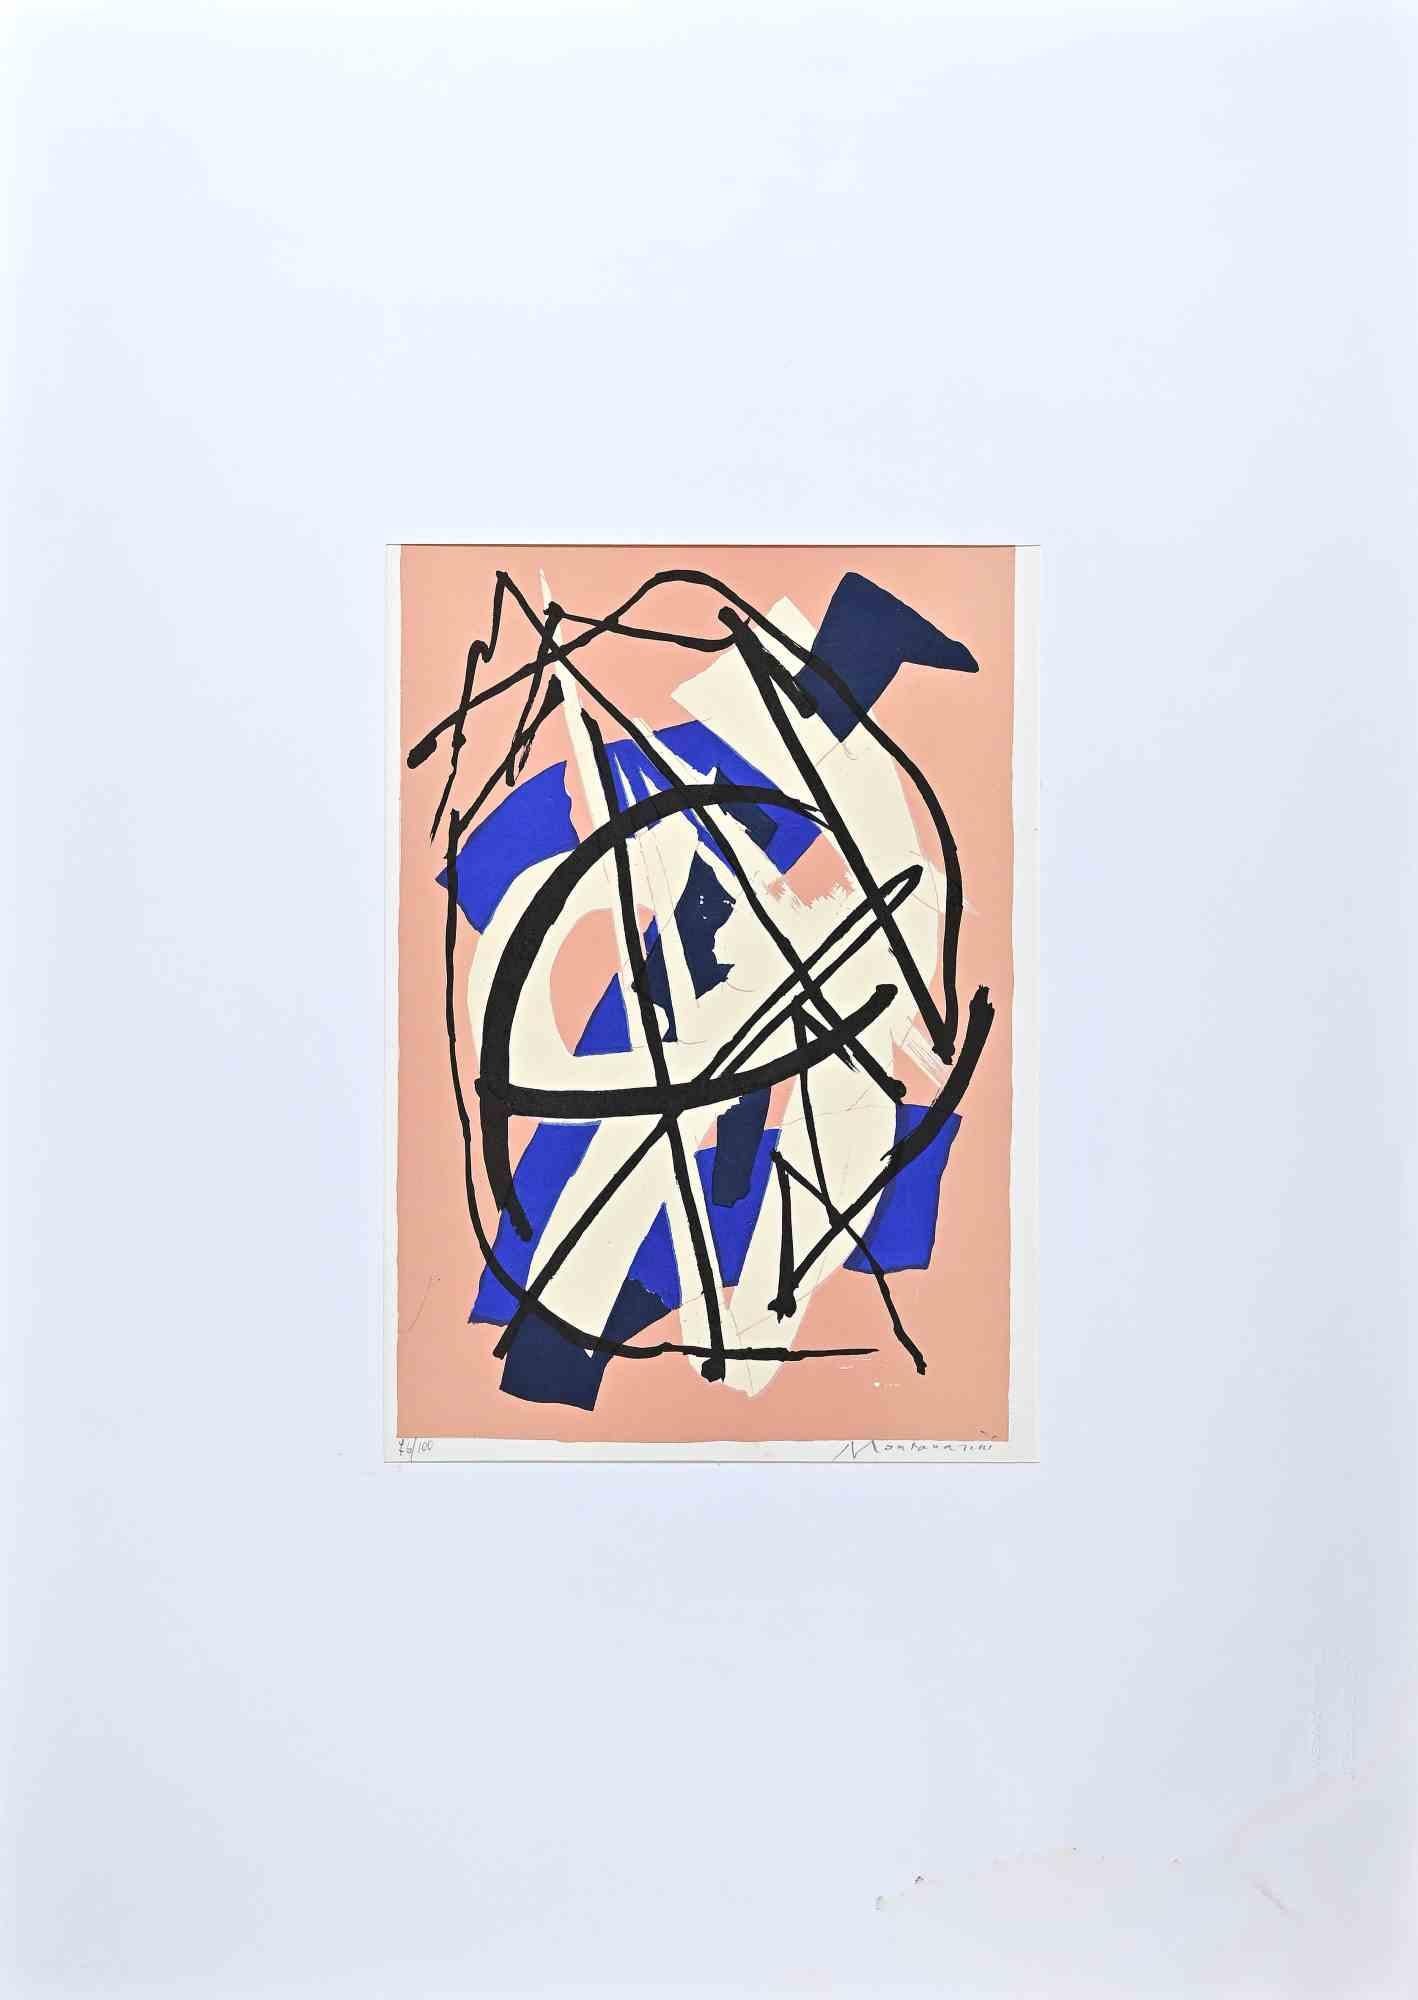 Abstract Composition - Original Lithograph by Luigi Montanarini - 1973